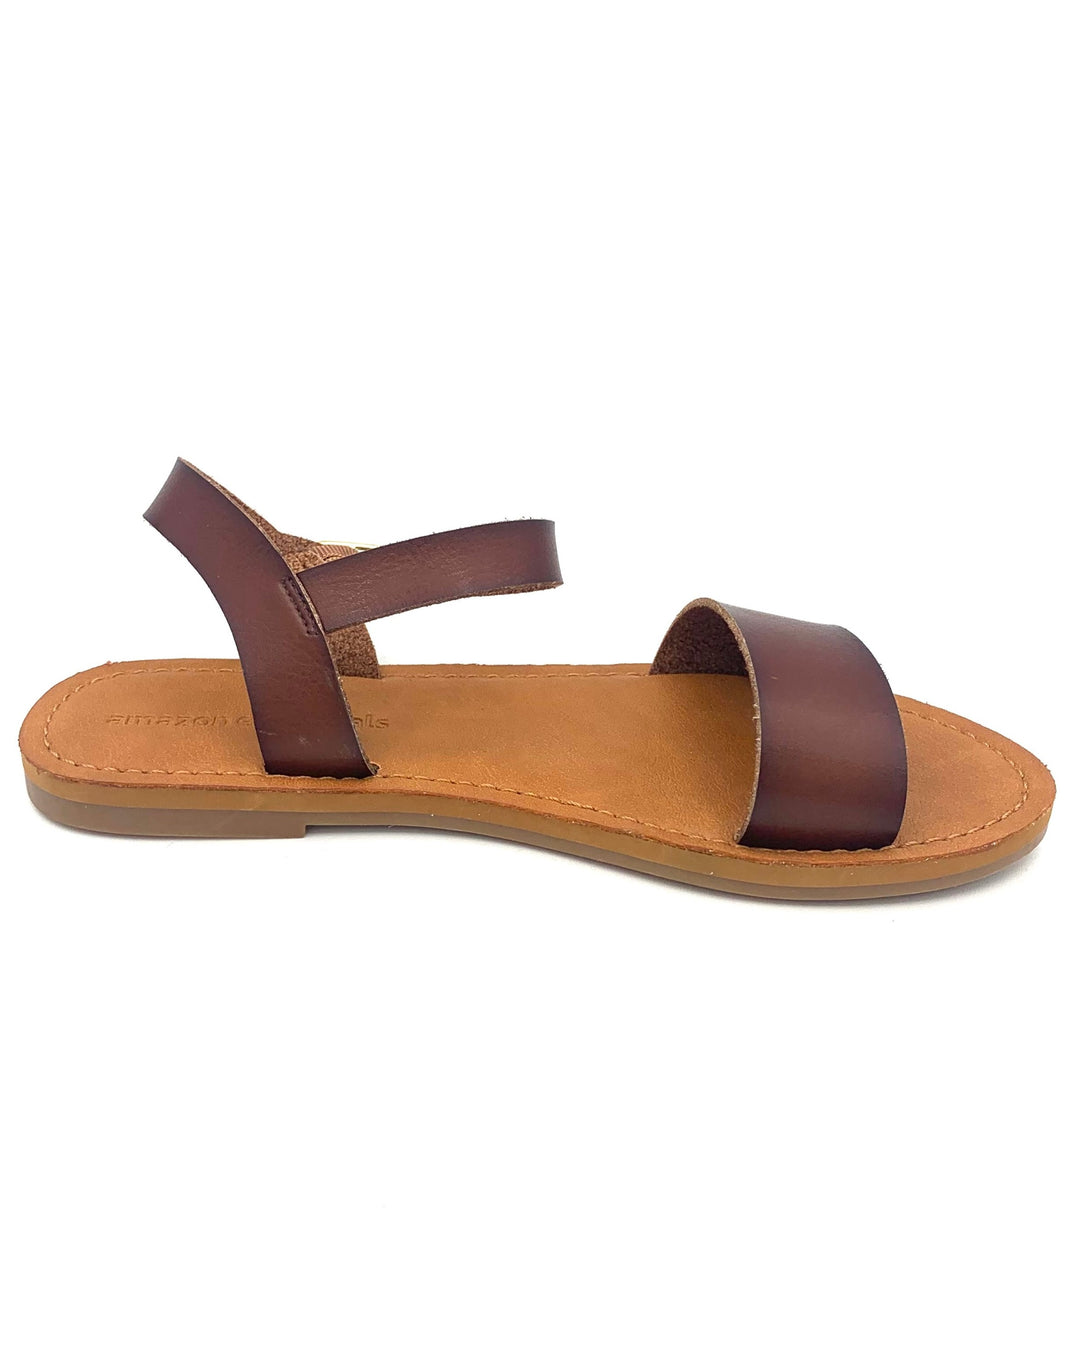 Dark Tan Strap Sandals - Size 6